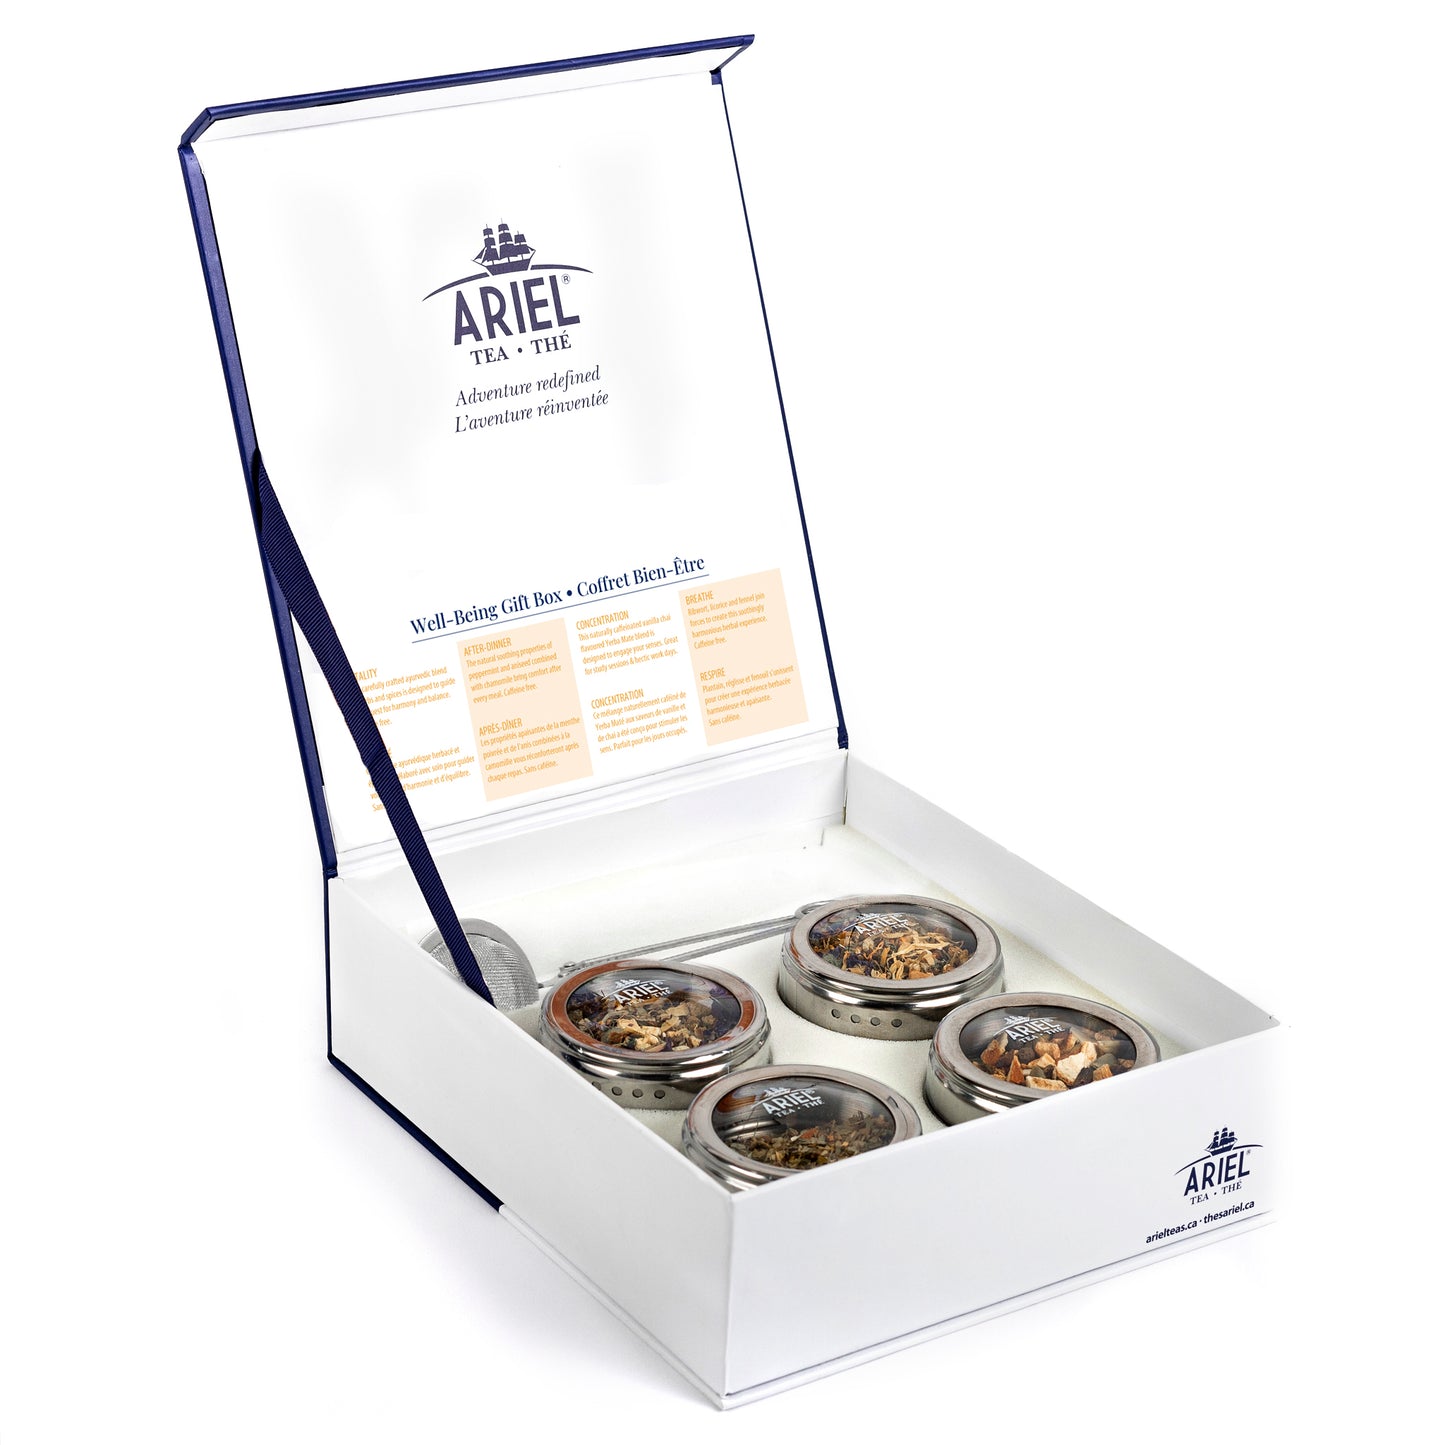 Ariel Tea Gift Box - Herbal Teas